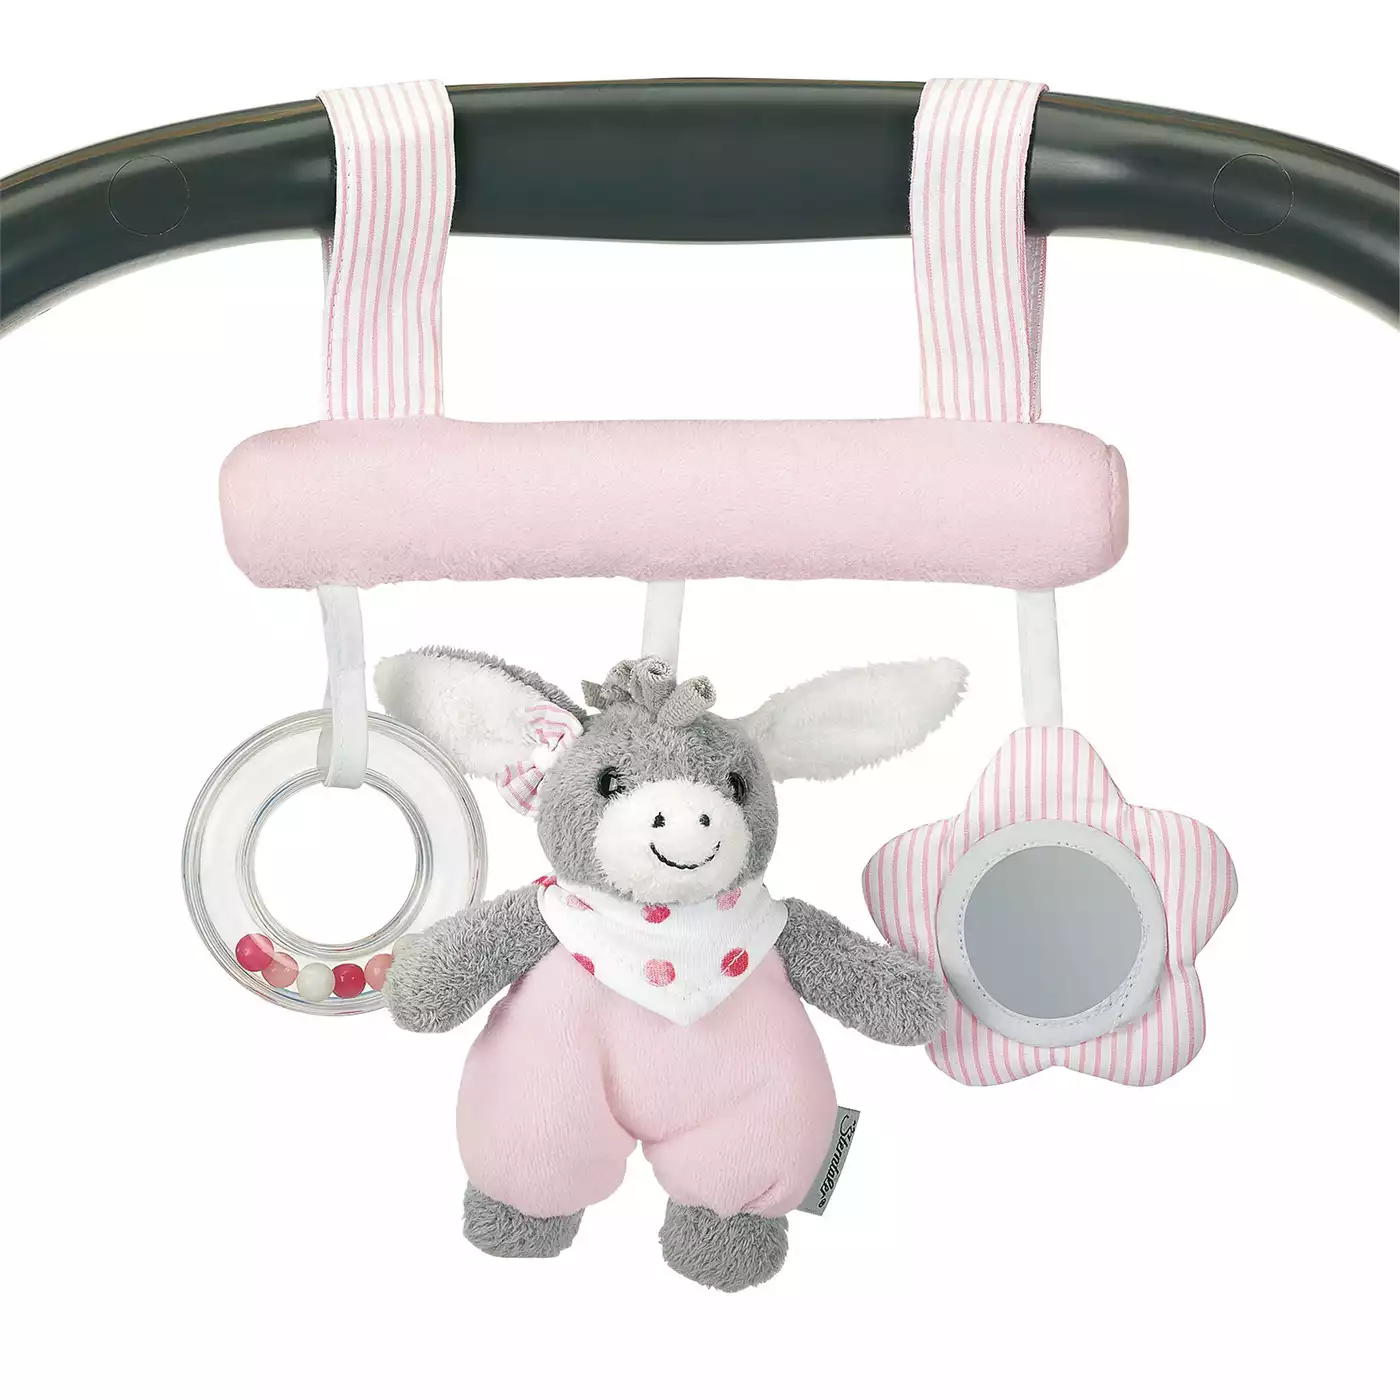 Spielzeug zum Aufhängen Emmi Girl Sterntaler Pink Rosa Weiß 2000570637215 1